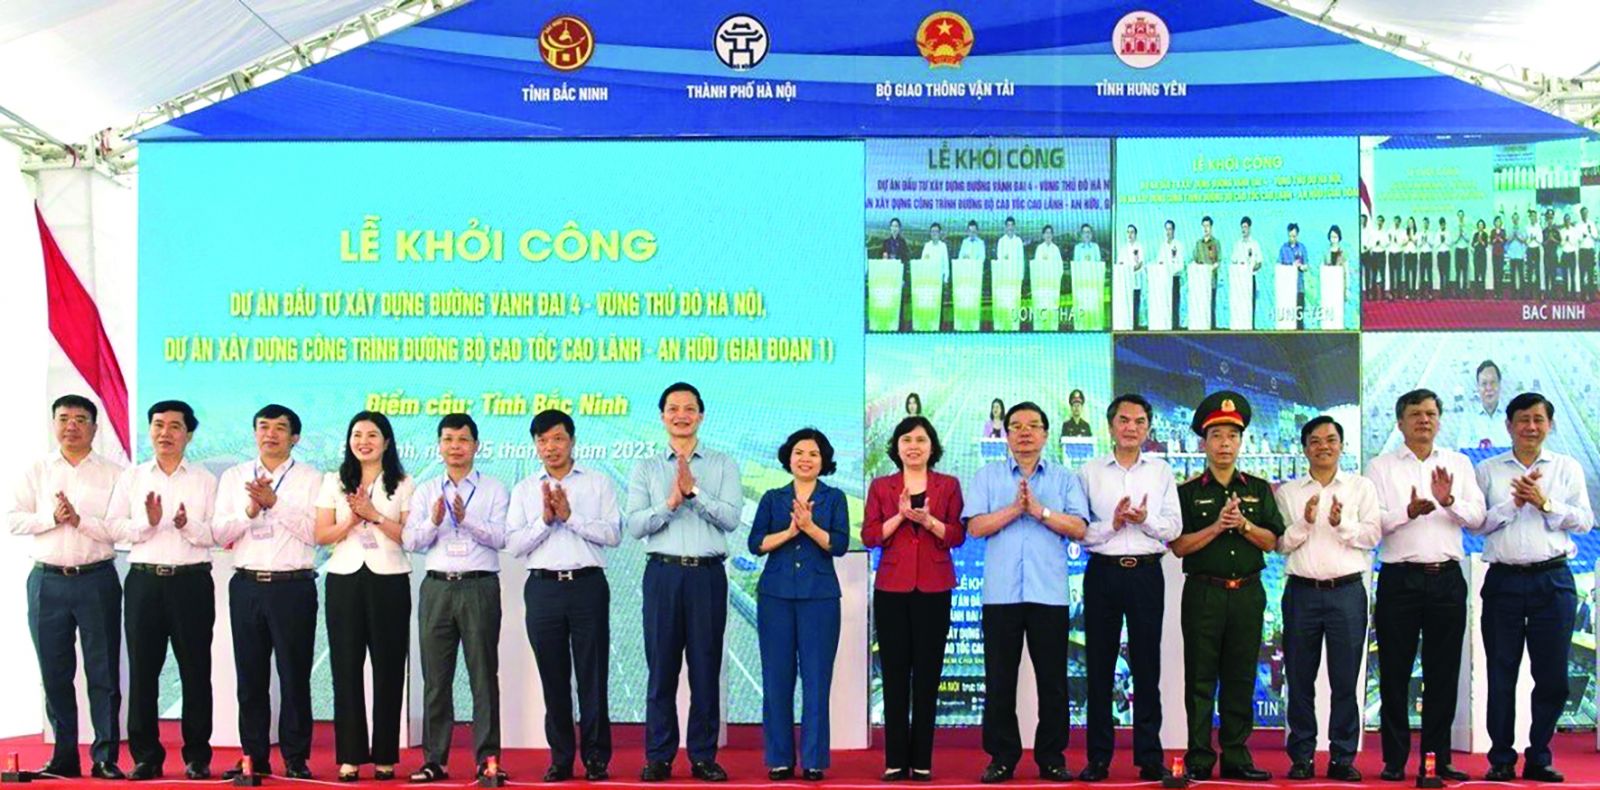  Lãnh đạo tỉnh tại điểm cầu Bắc Ninh dự Lễ khởi công dự án đường Vành đai 4- Vùng Thủ đô